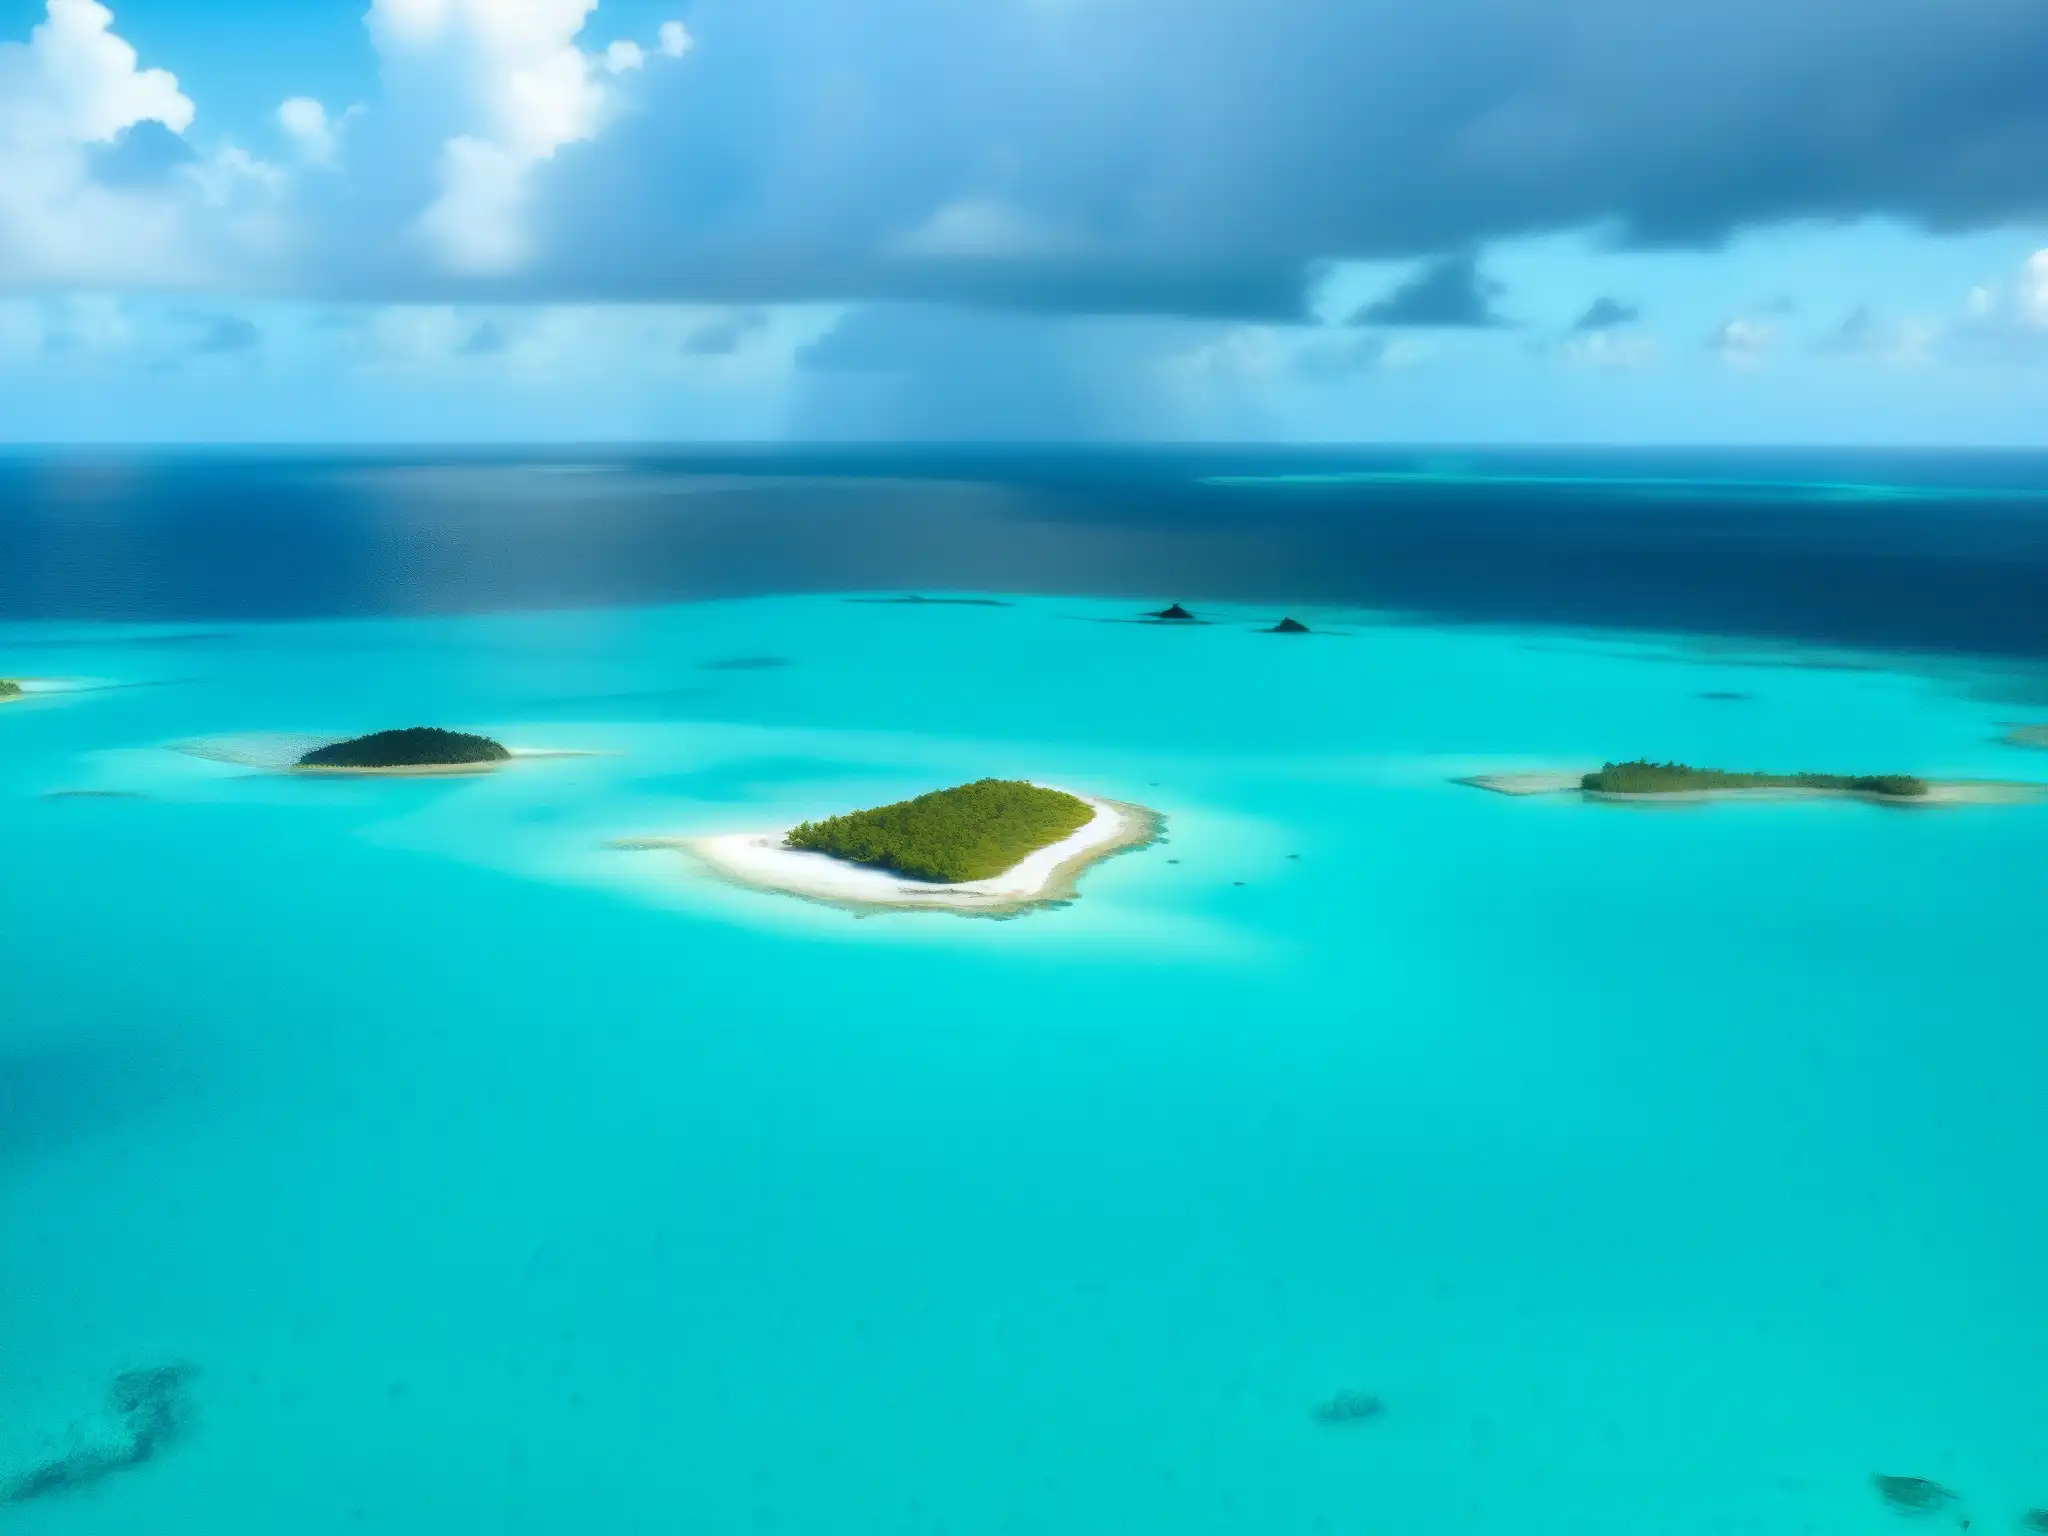 Fenómeno natural Triángulo de las Bermudas: vista aérea con aguas turquesas y nubes ominosas, evocando su belleza y misterio